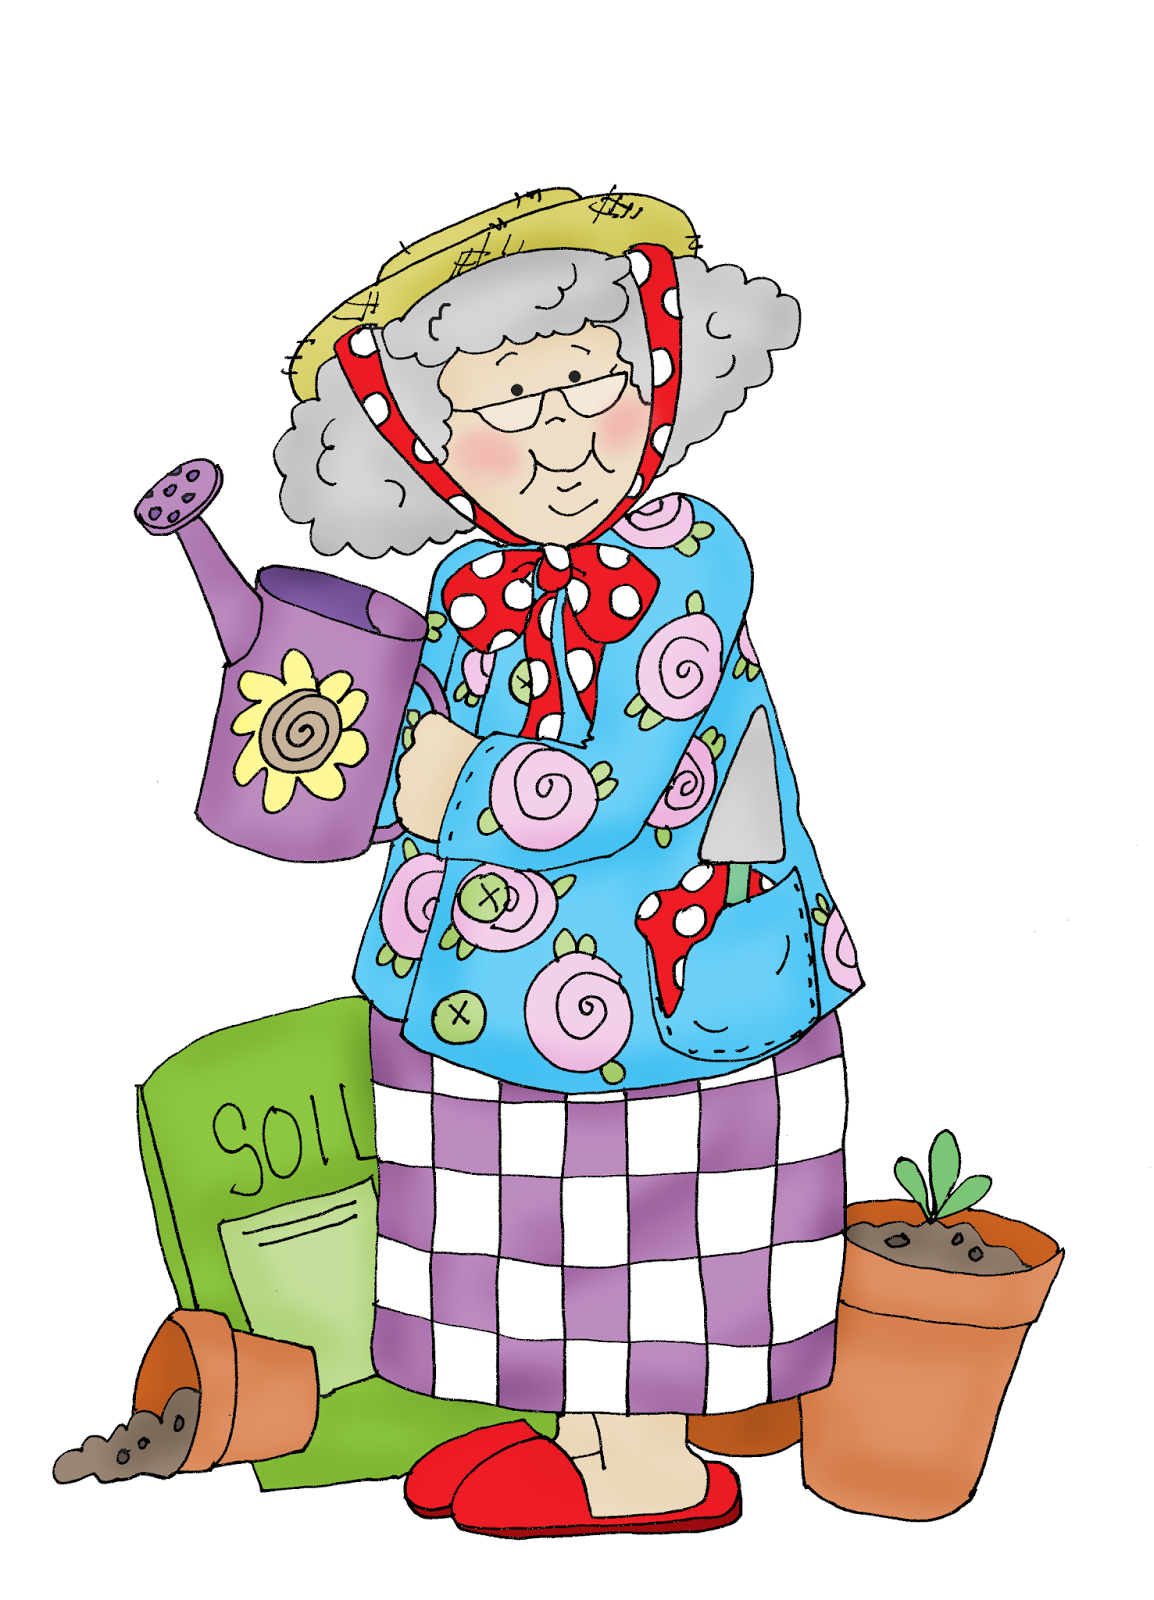 Картинка бабушка. Бабушка рисунок. Баба рисунок. Мультяшные бабушки. Бабушка картинка для детей.